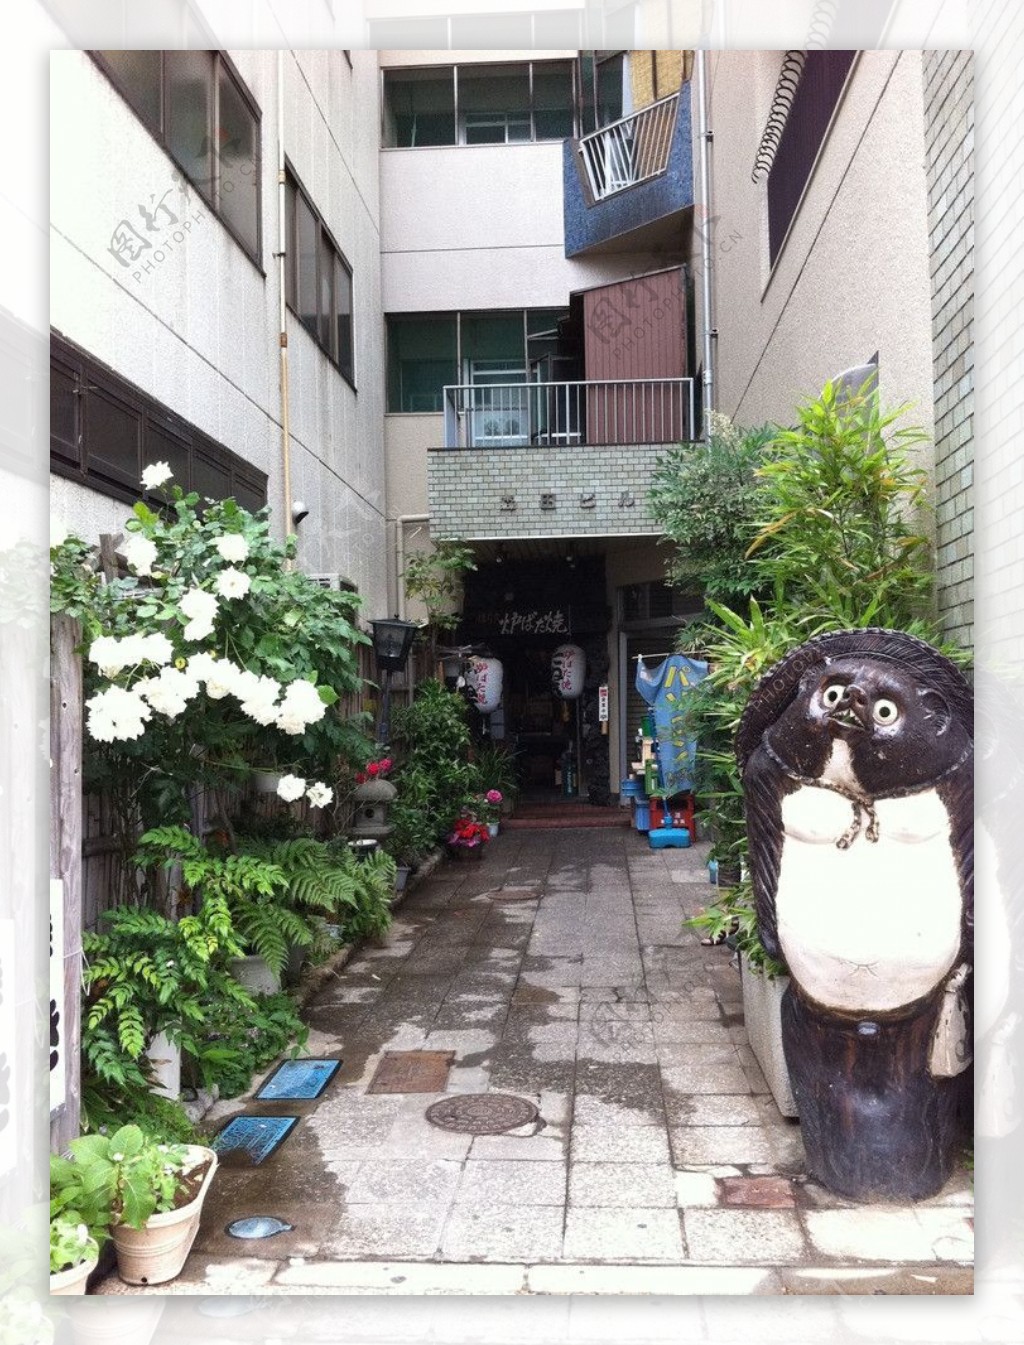 日本居民区街道图片